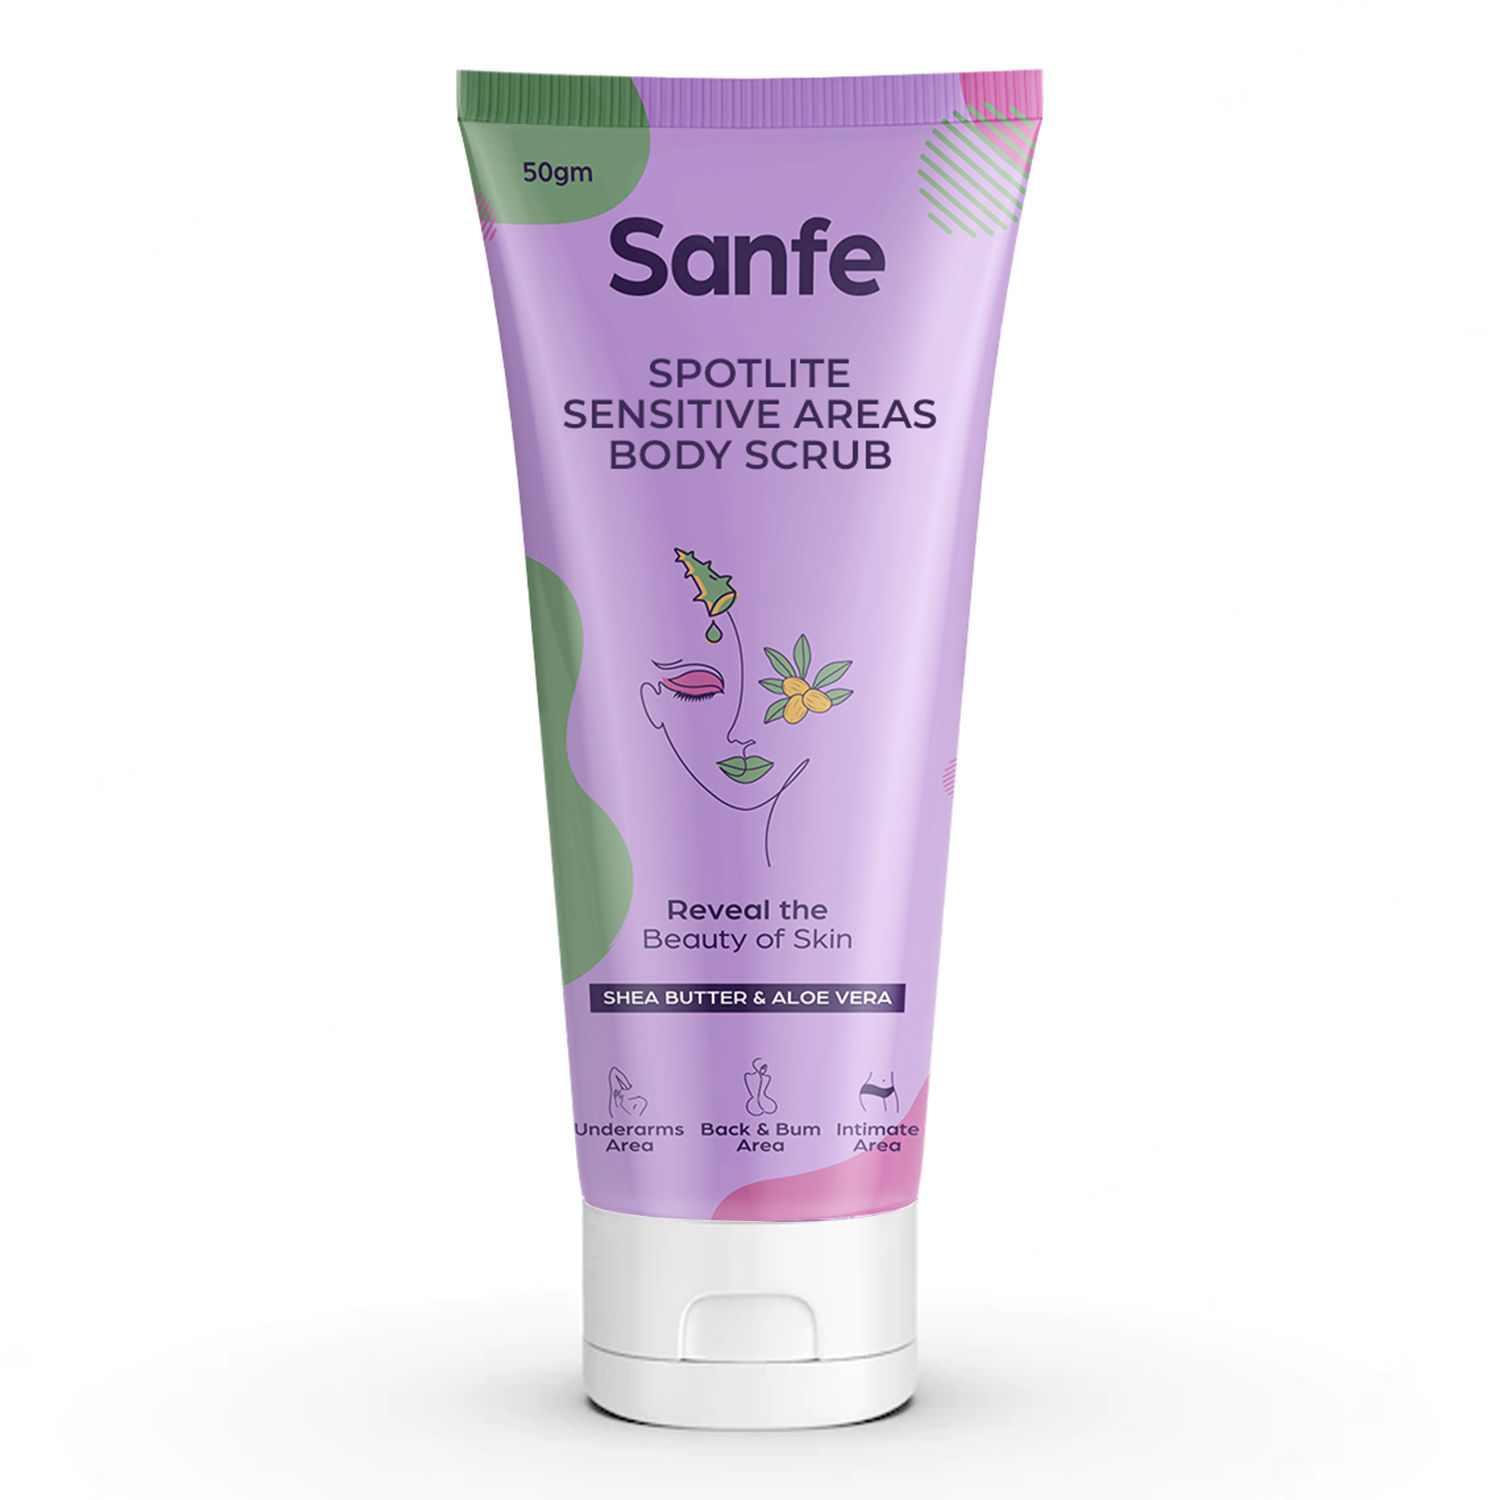 Buy Sanfe Spotlite Sensitive Areas Body  Scrub For Underarms Area, Back & Bum Area, Intimate Area| 50gm - Purplle